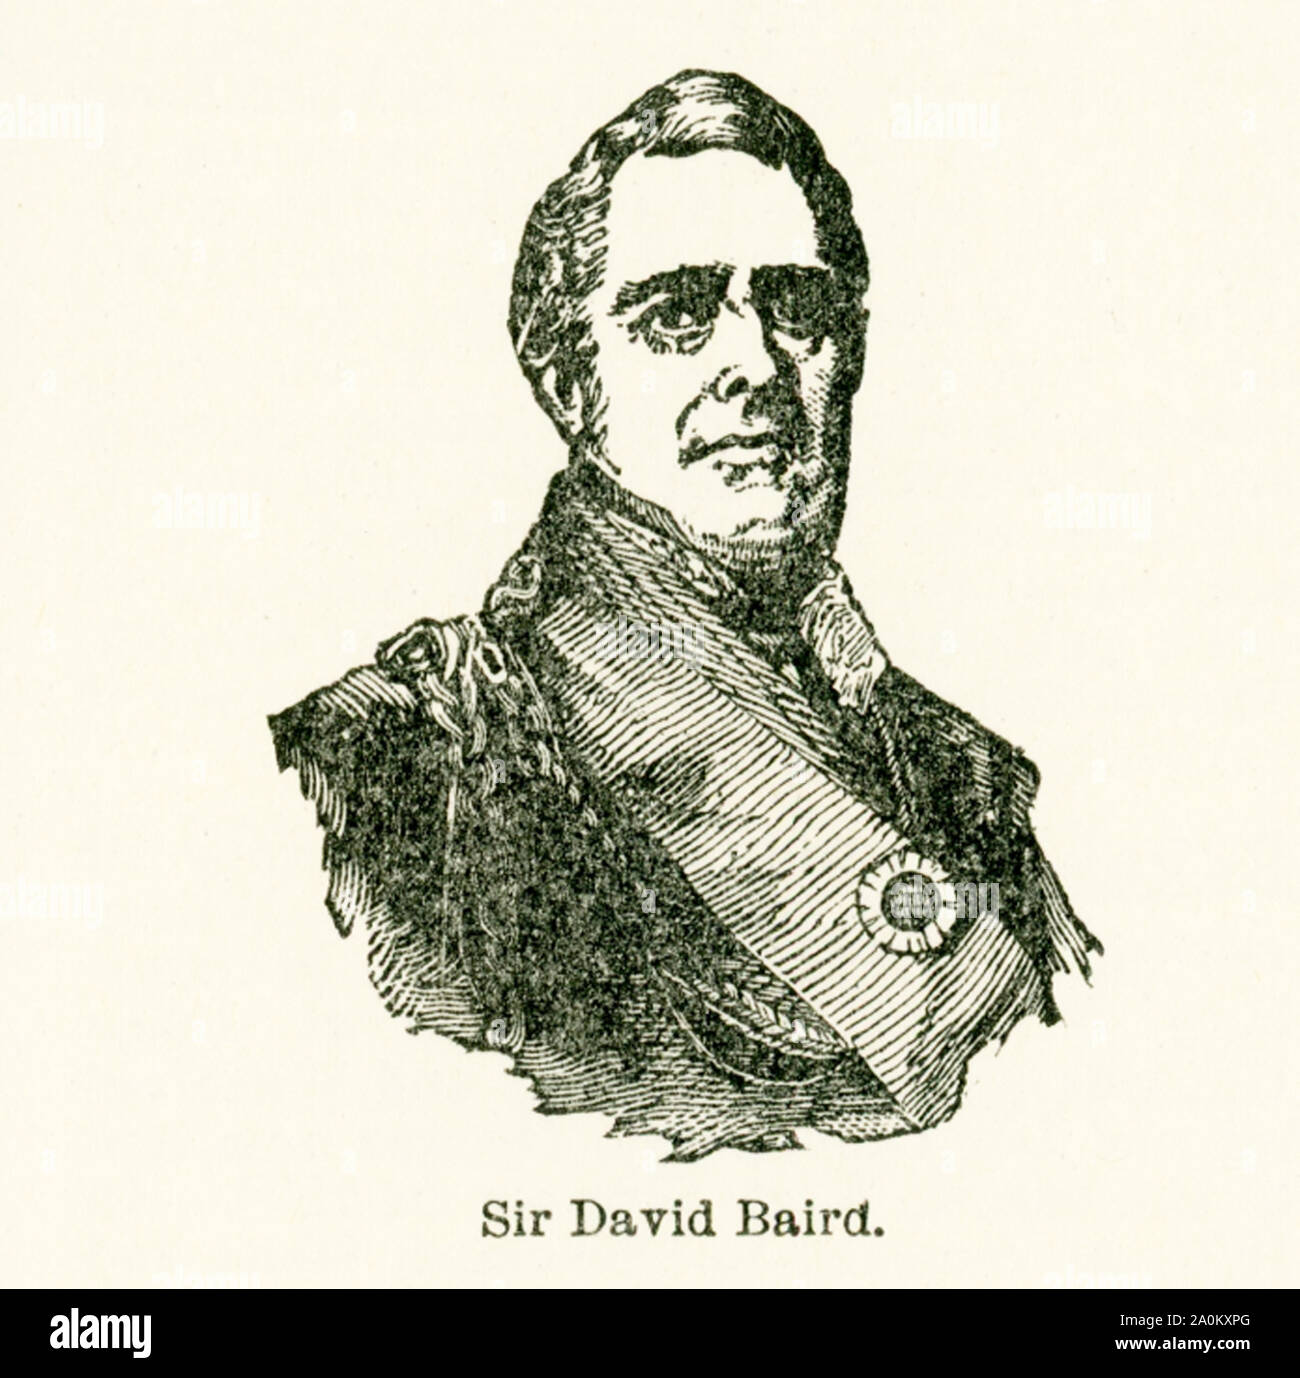 Questa illustrazione risale ai primi anni venti e mostra Sir David Baird (1757-1829). Sir Baird era un militare inglese leader. Baird entra nell'esercito nel 1772. Egli fu inviato in India dove egli vide il servizio attivo e fu tenuto prigioniero in Mysore per quattro anni. Avendo brevemente restituito alla Gran Bretagna, nel 1790 Baird ha ritornato in India dove ha catturato Pondicherry nel 1792 ed è stato promosso al grado di colonnello. Baird ha ricevuto la sua promozione a generale nel 1814, e successivamente ha servito come comandante in capo in Irlanda. Foto Stock